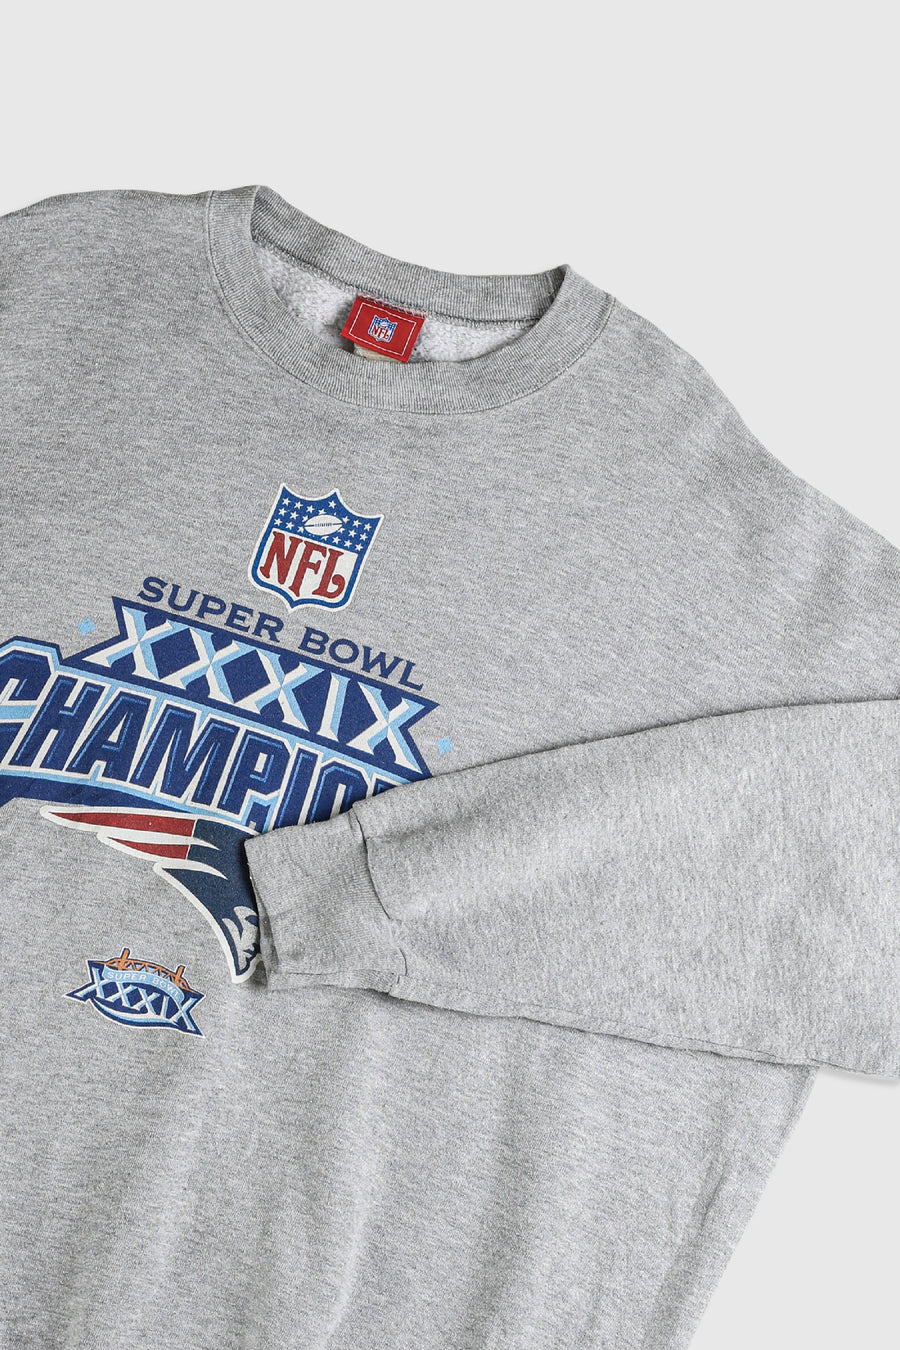 Vintage Patriots Superbowl NFL Sweatshirt